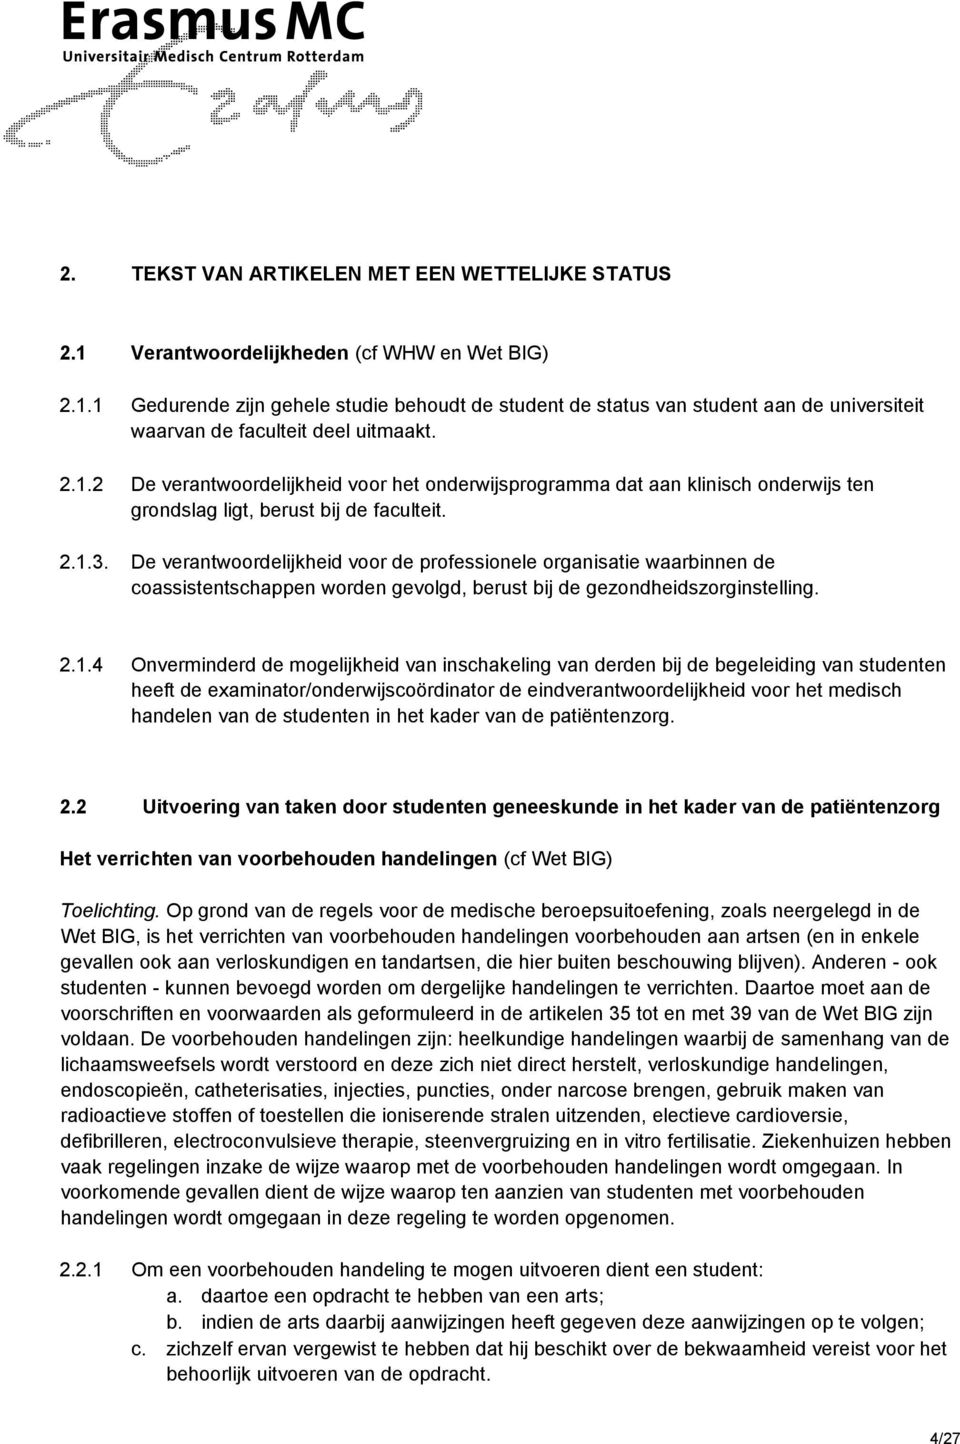 De verantwoordelijkheid voor de professionele organisatie waarbinnen de coassistentschappen worden gevolgd, berust bij de gezondheidszorginstelling. 2.1.